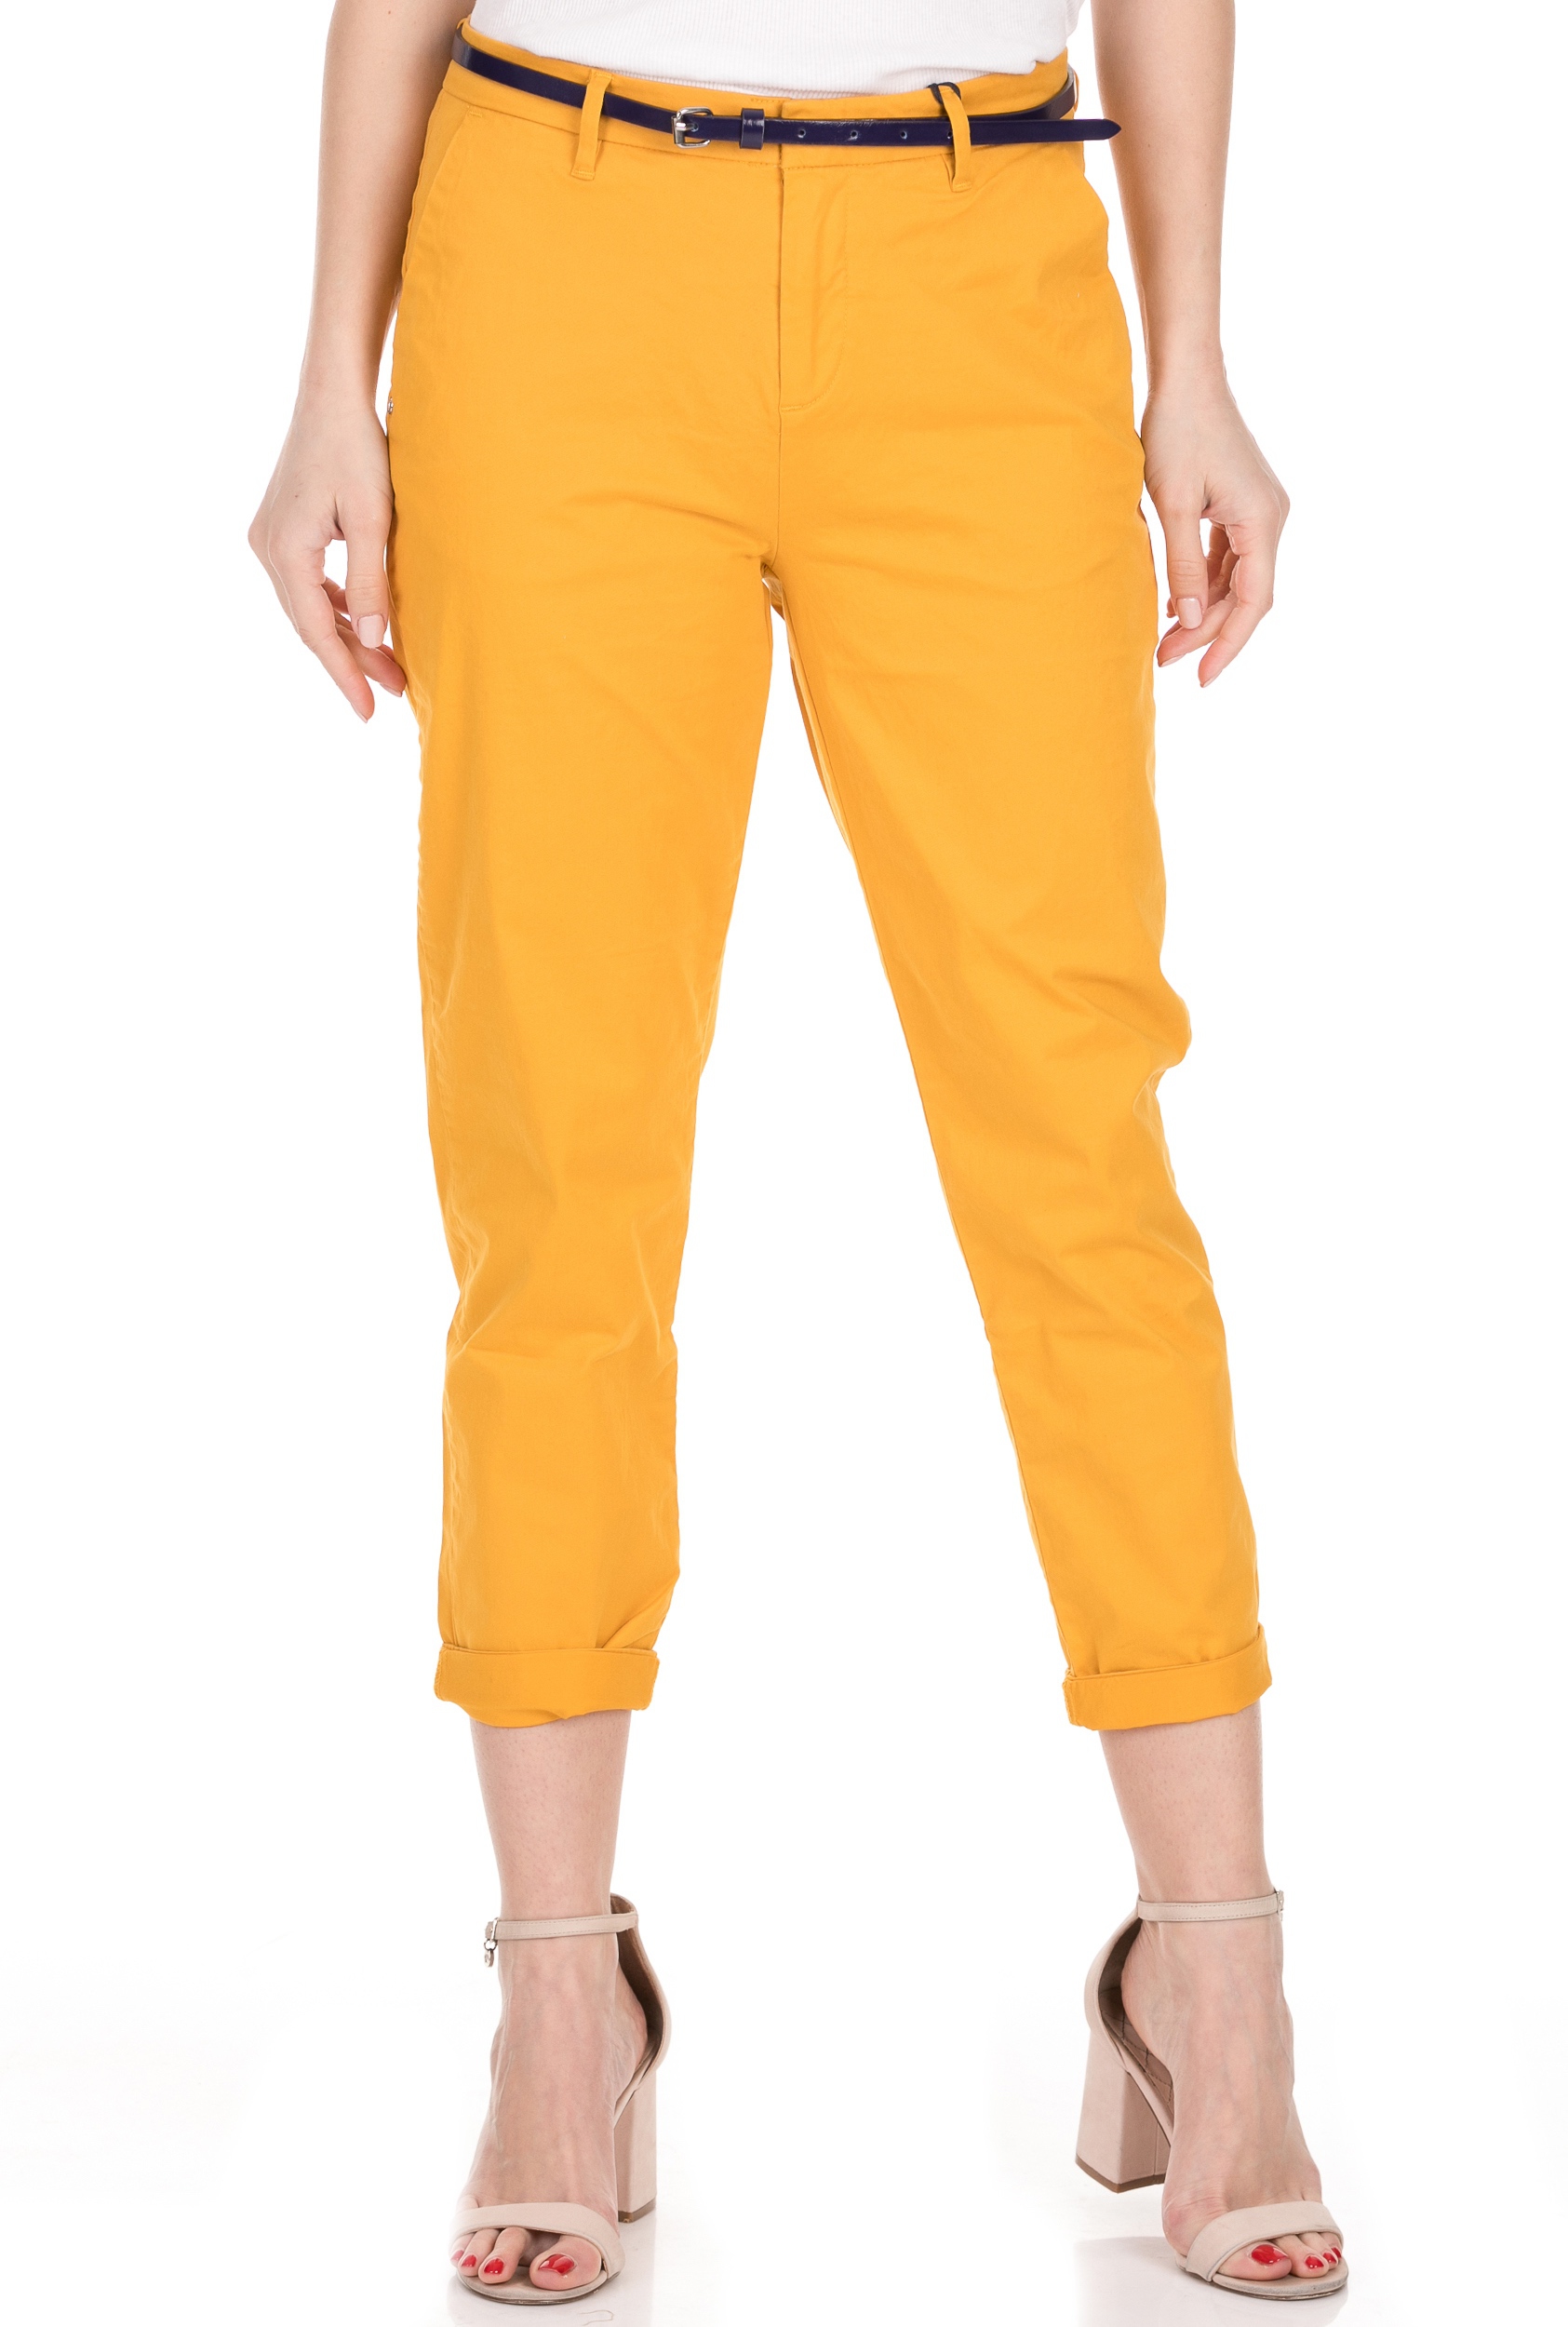 SCOTCH & SODA SCOTCH & SODA - Γυναικείο παντελόνι SCOTCH & SODA Ams Blauw κίτρινο